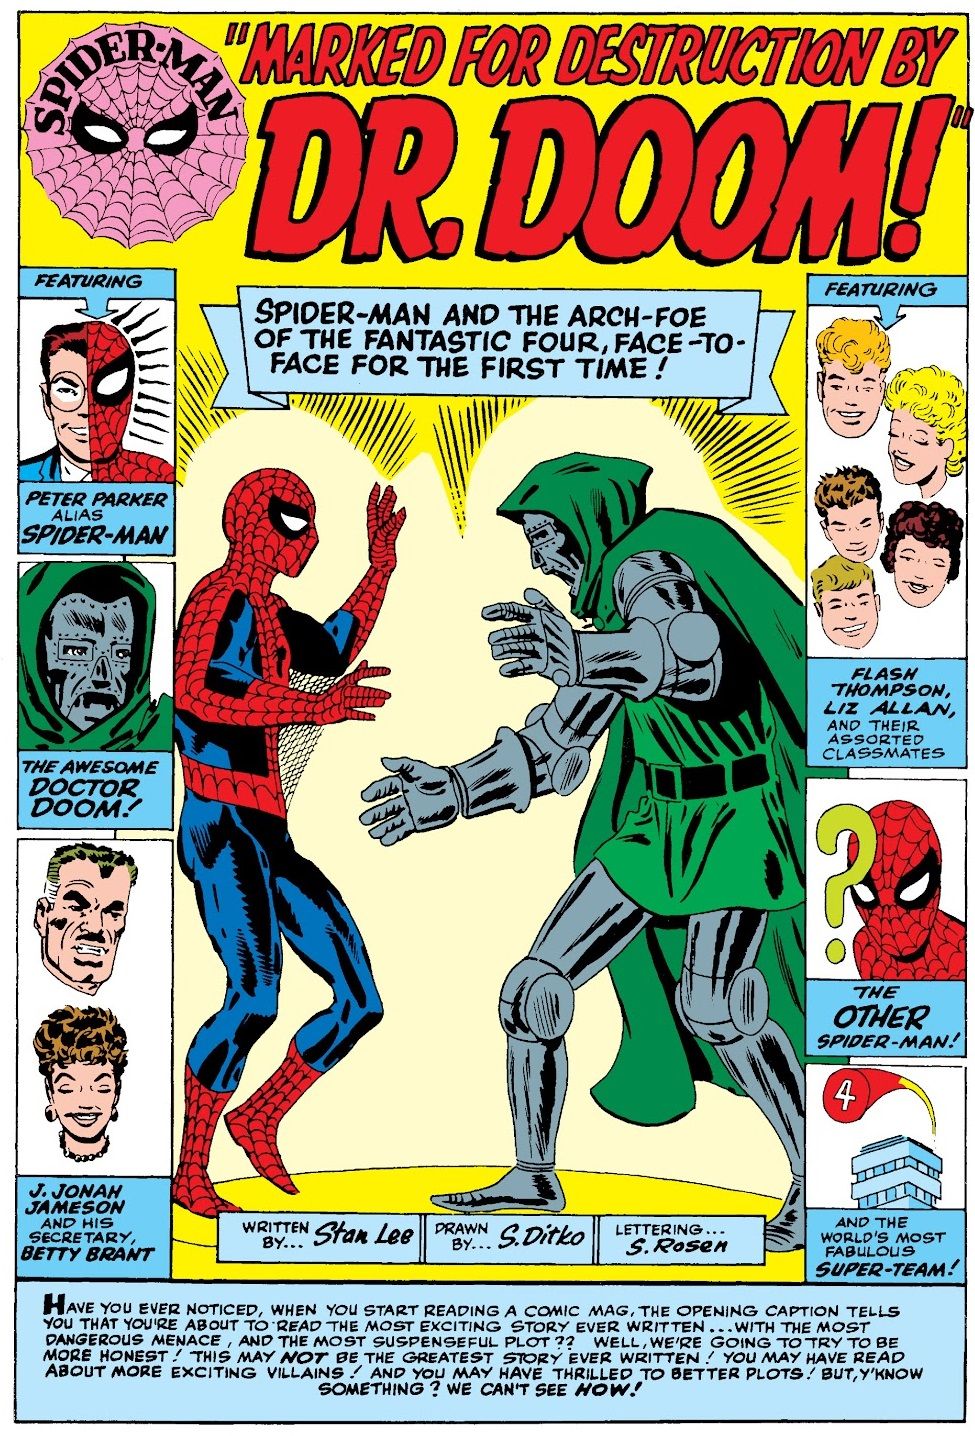 Человек-паук: пять раз он открывал проблемы, жалуясь, пока размахивал паутиной